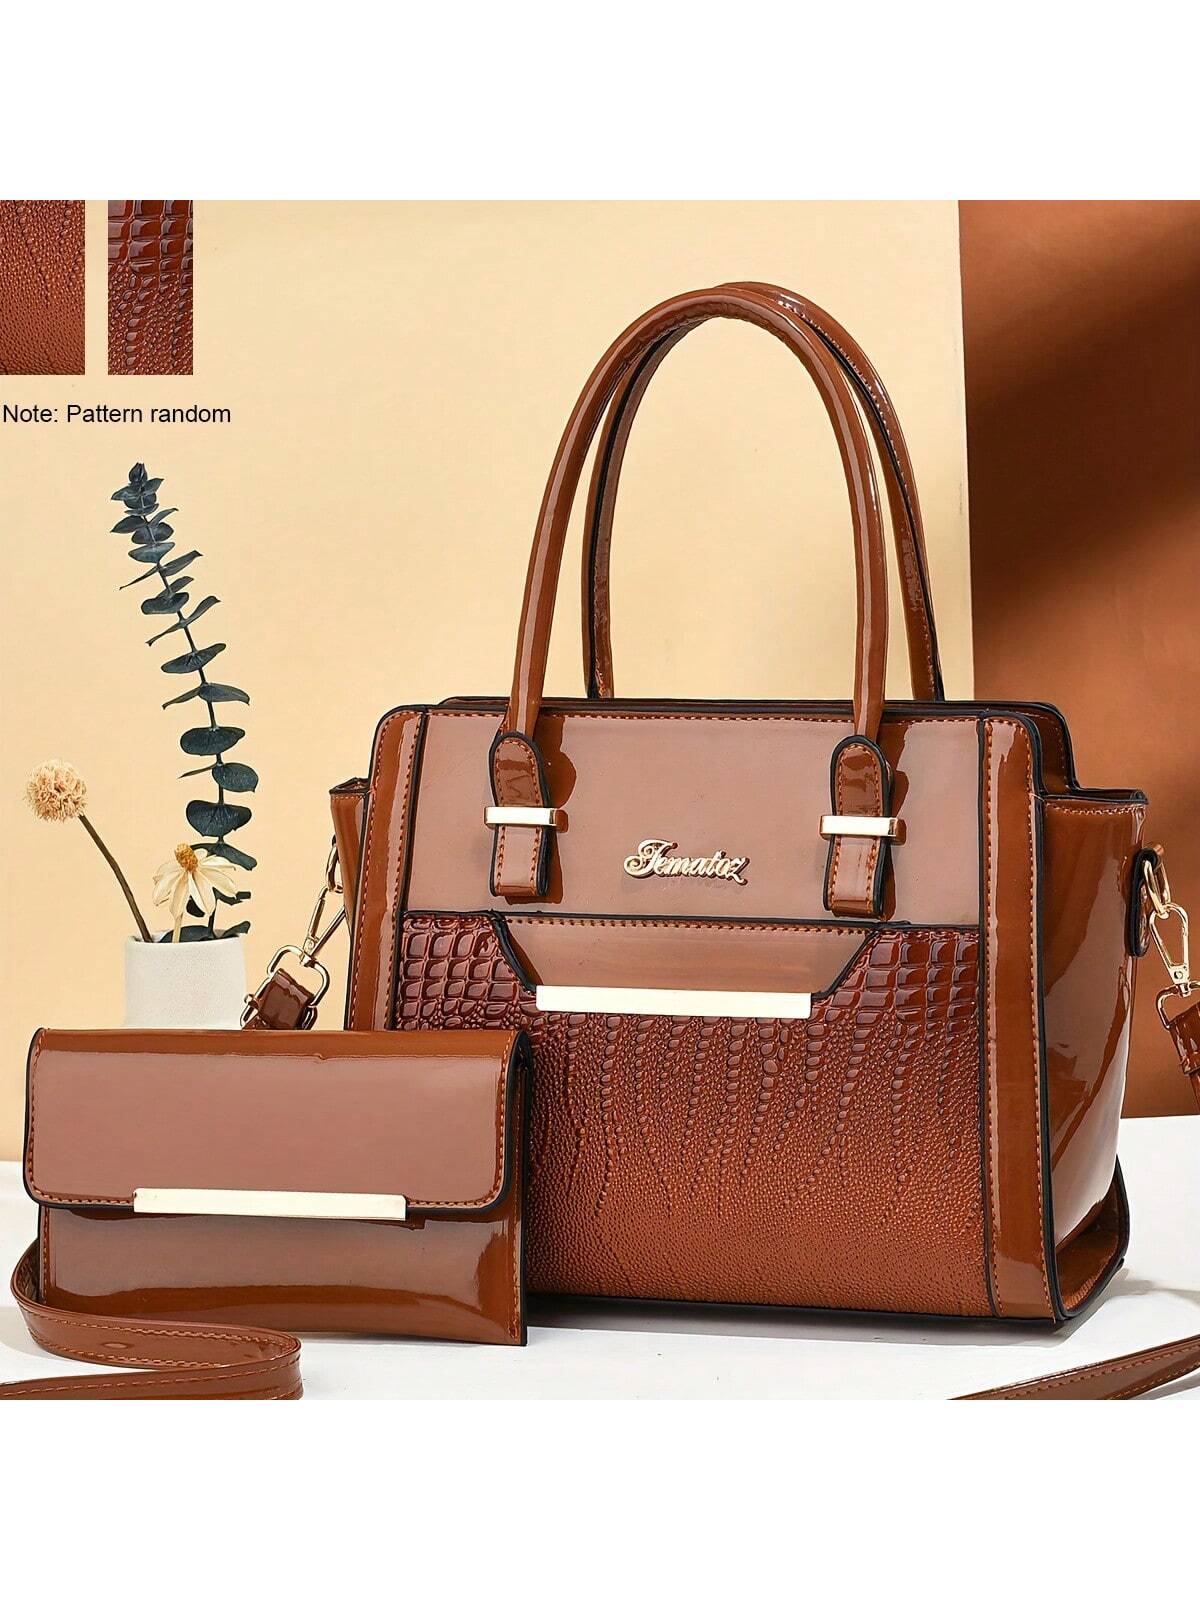 2023 Новая женская сумка с крокодиловым узором, коричневый новая сумка через плечо женская сумка нишевая губчатая сумка margiela многофункциональная наплечная сумка на плечо с полумесяцем